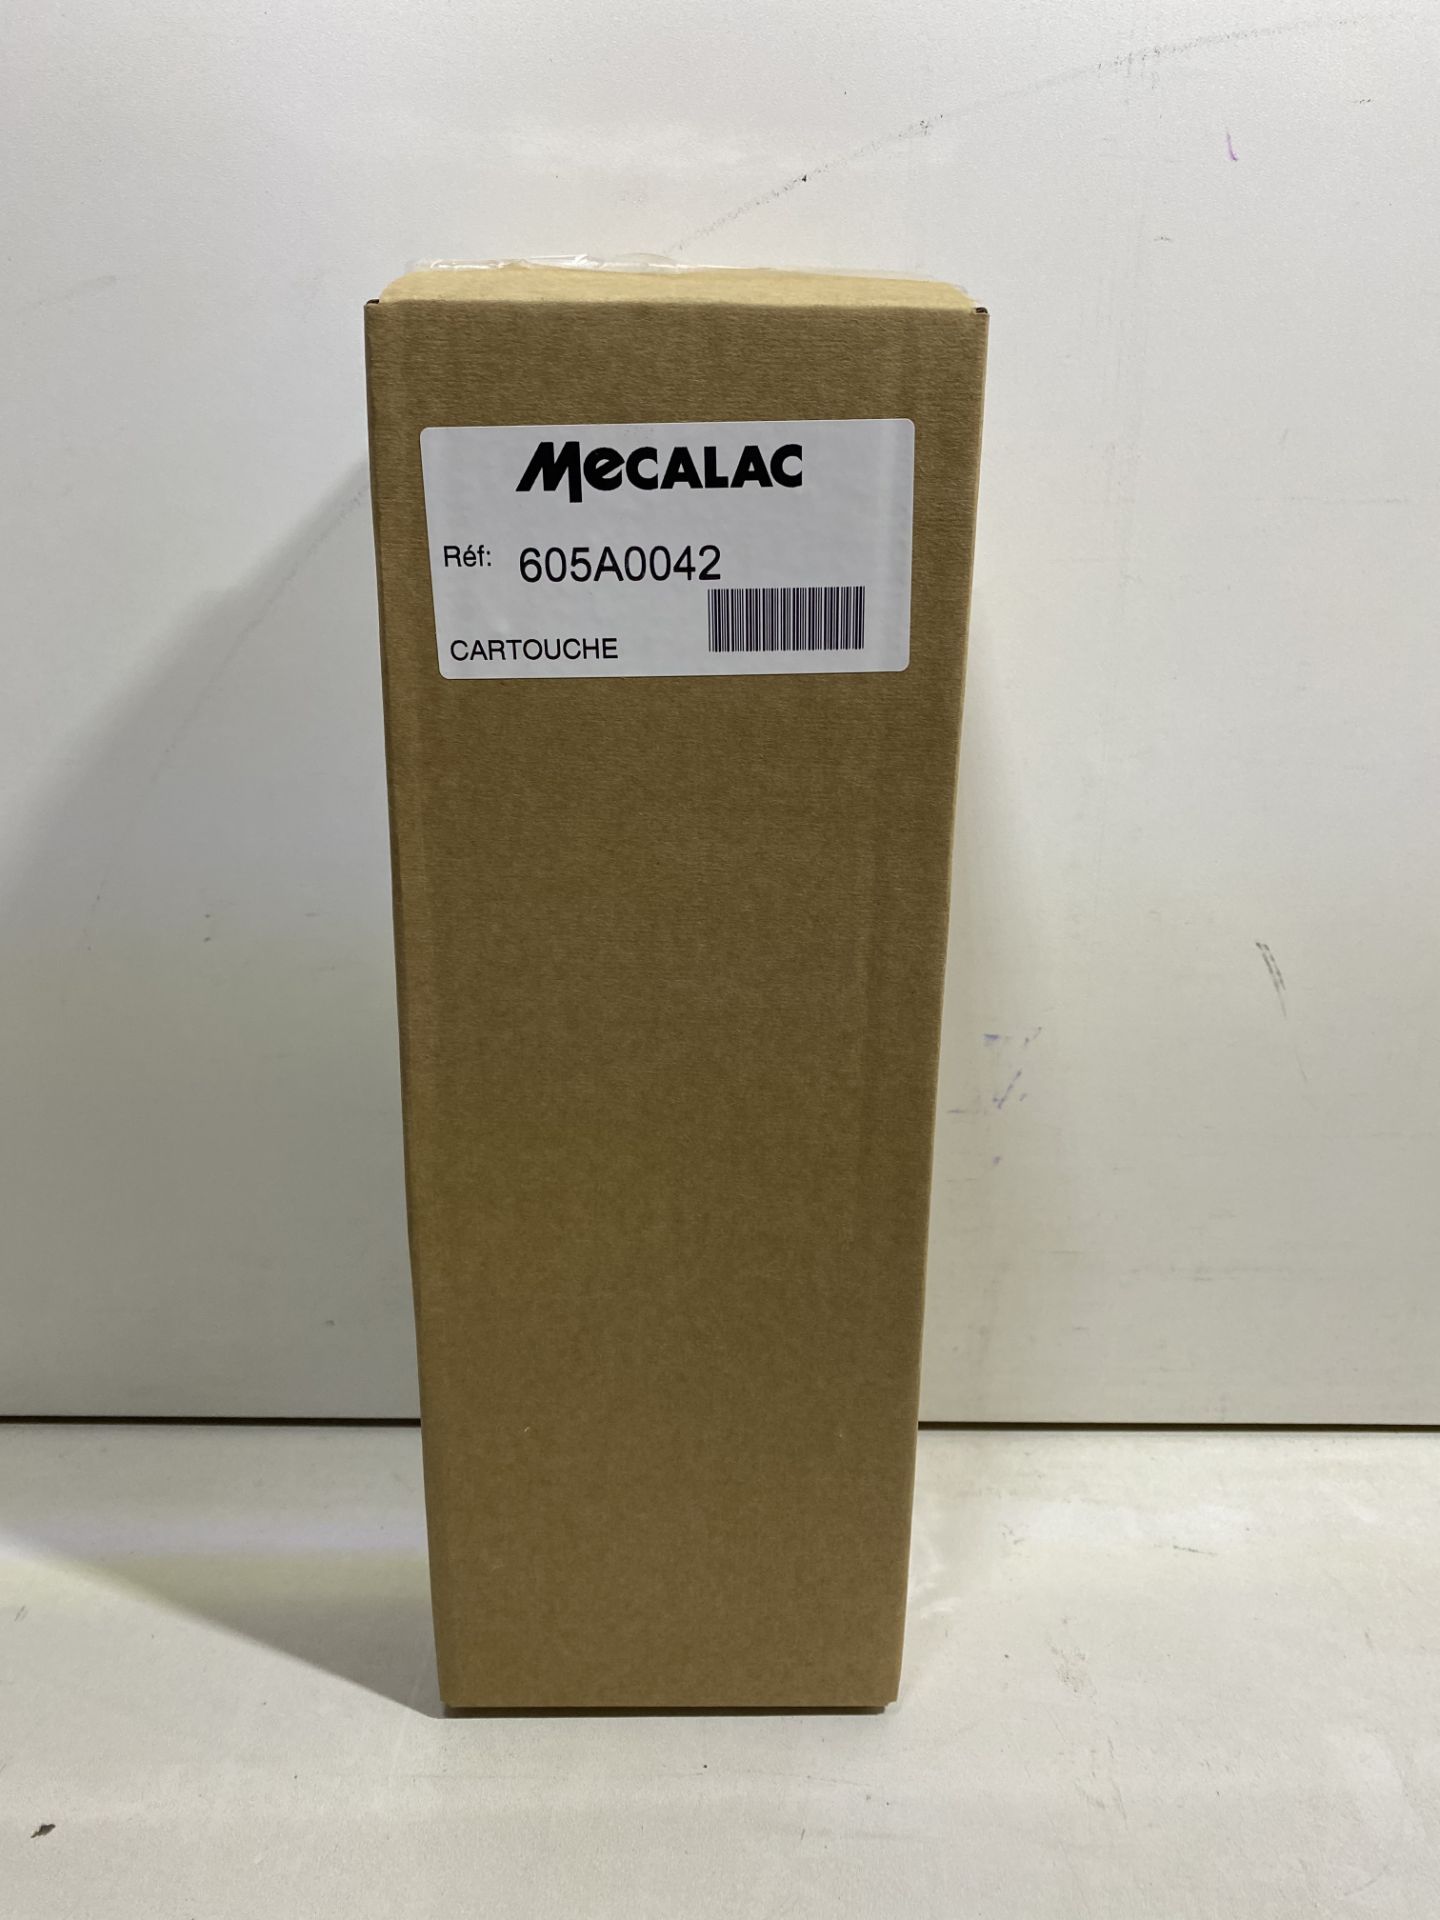 2 x Mecalac Kit Vidange Drain Kits - Image 9 of 22